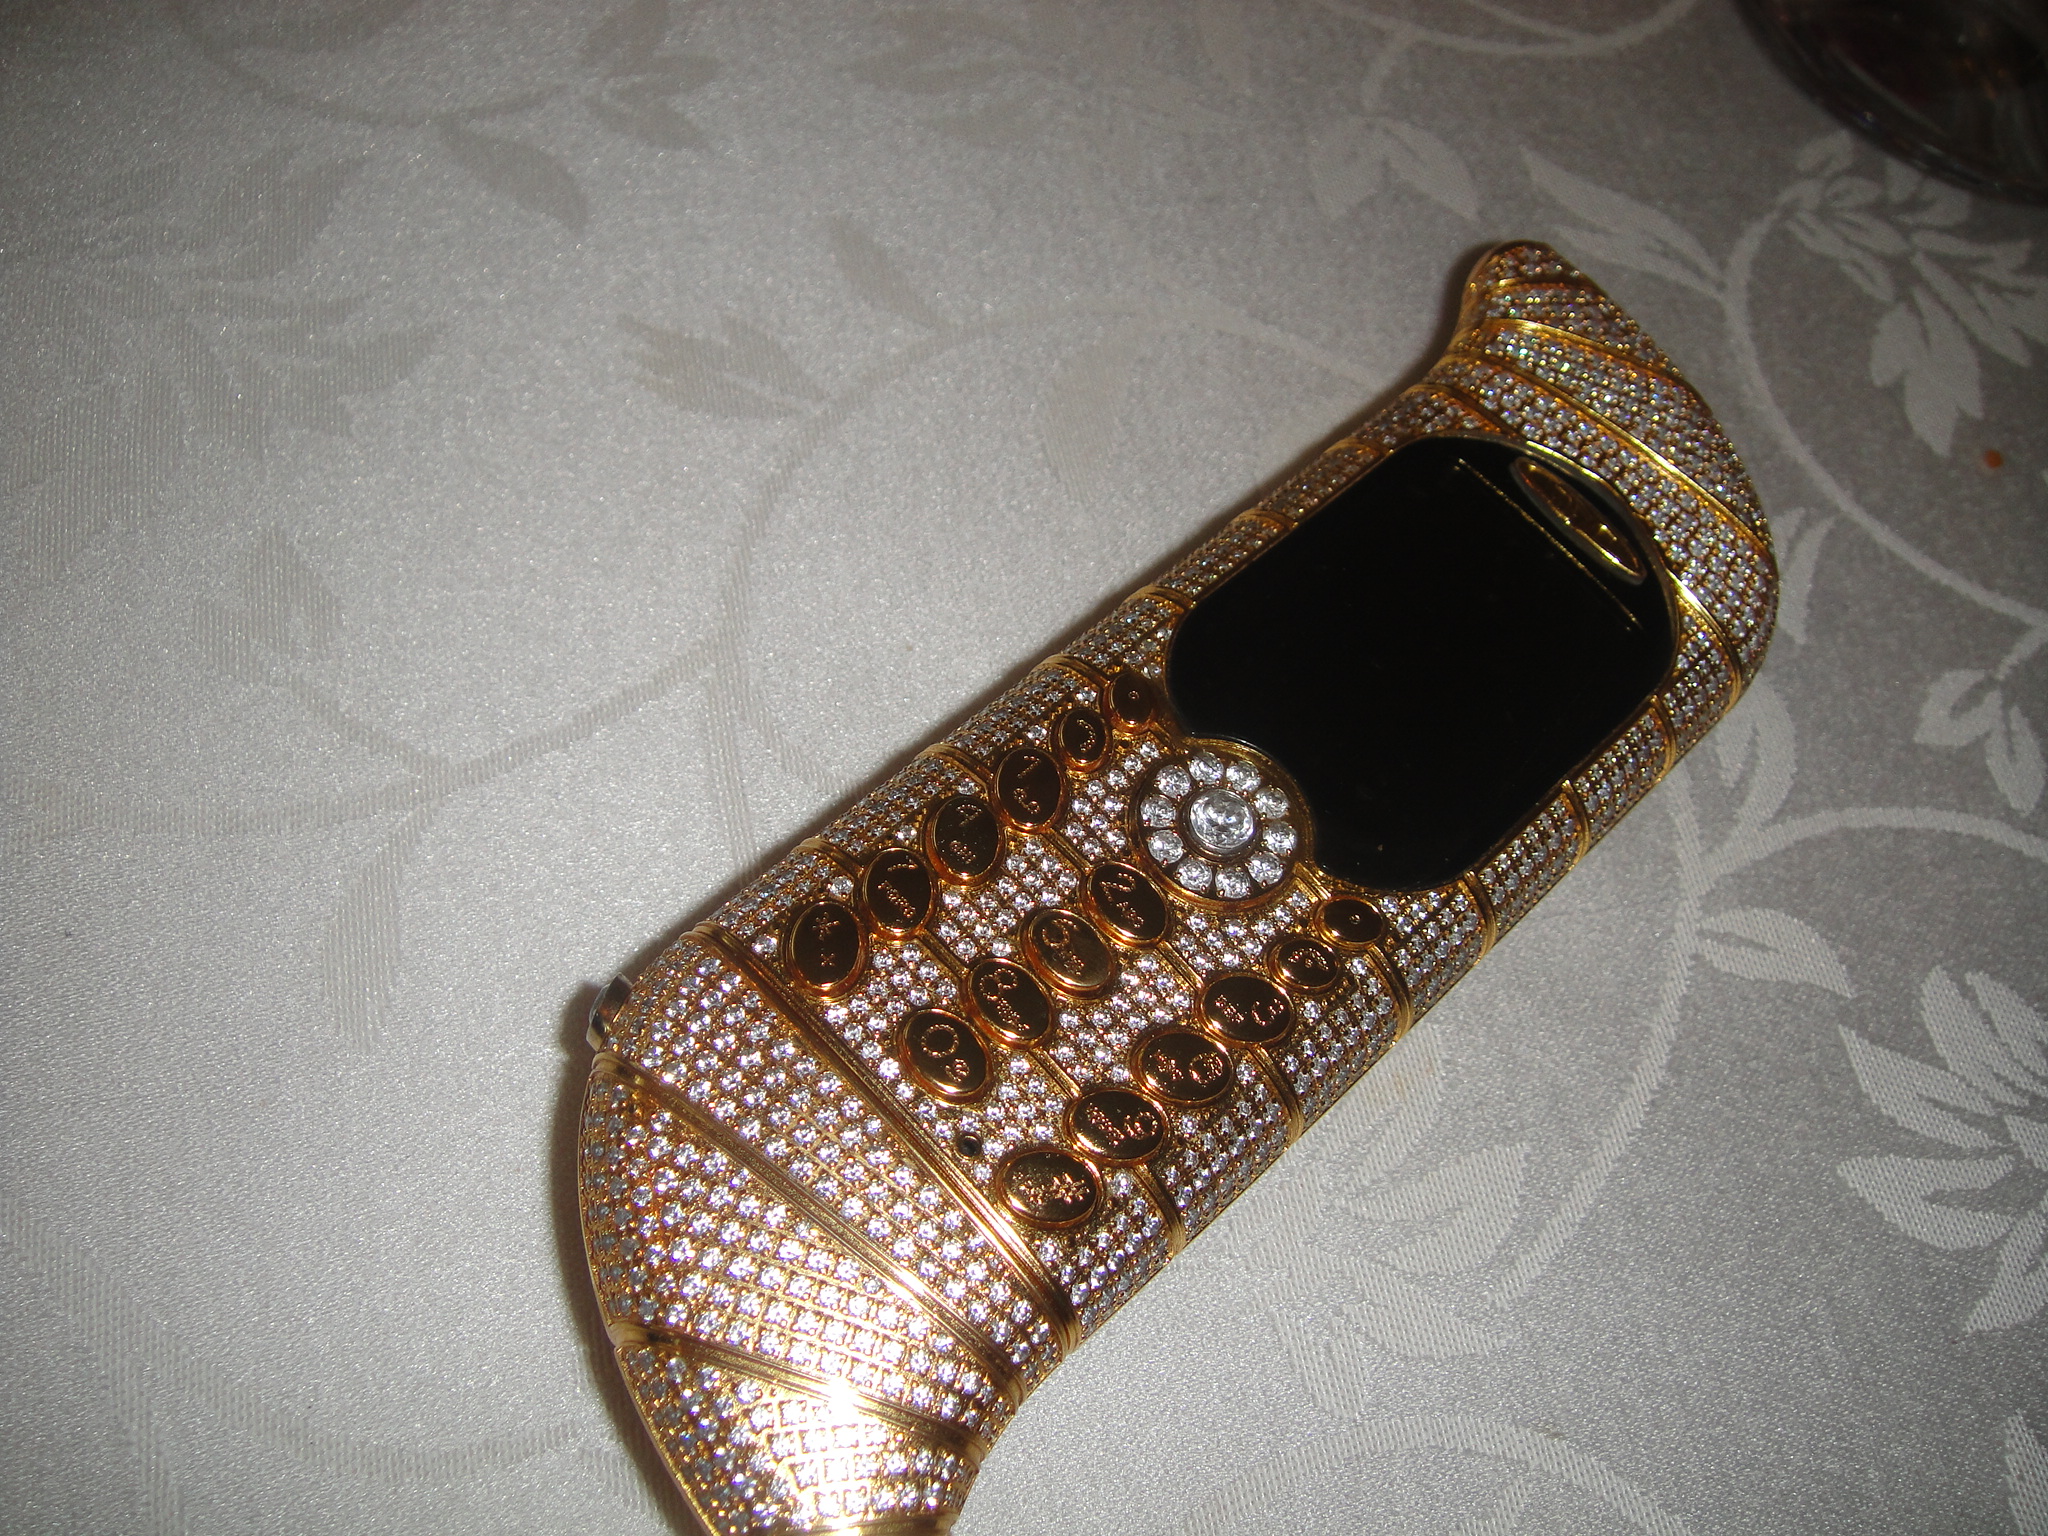 Telefonul este confectionat din aur si impodobit cu diamante